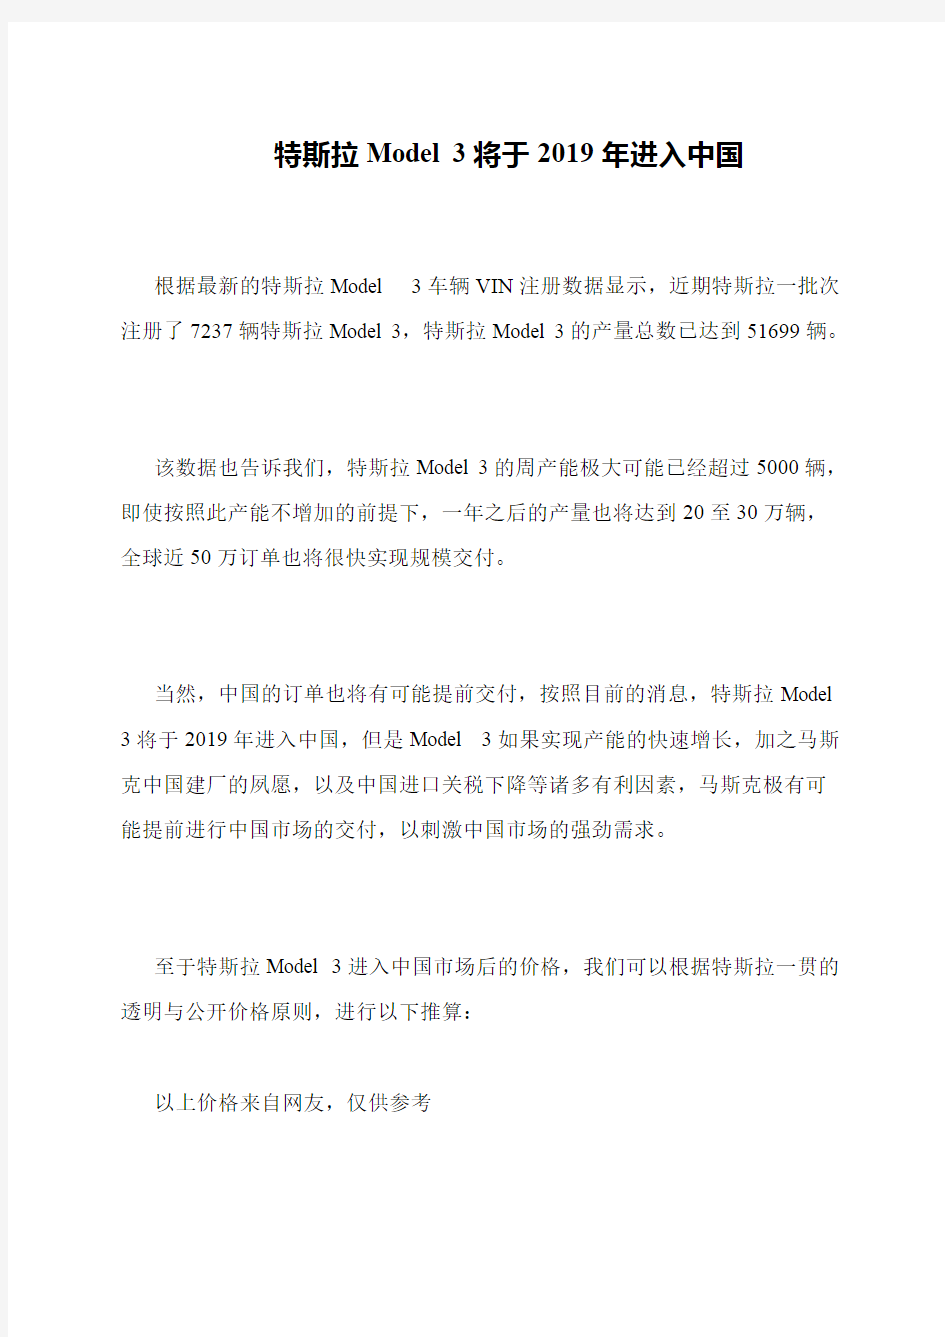 特斯拉Model 3将于2019年进入中国